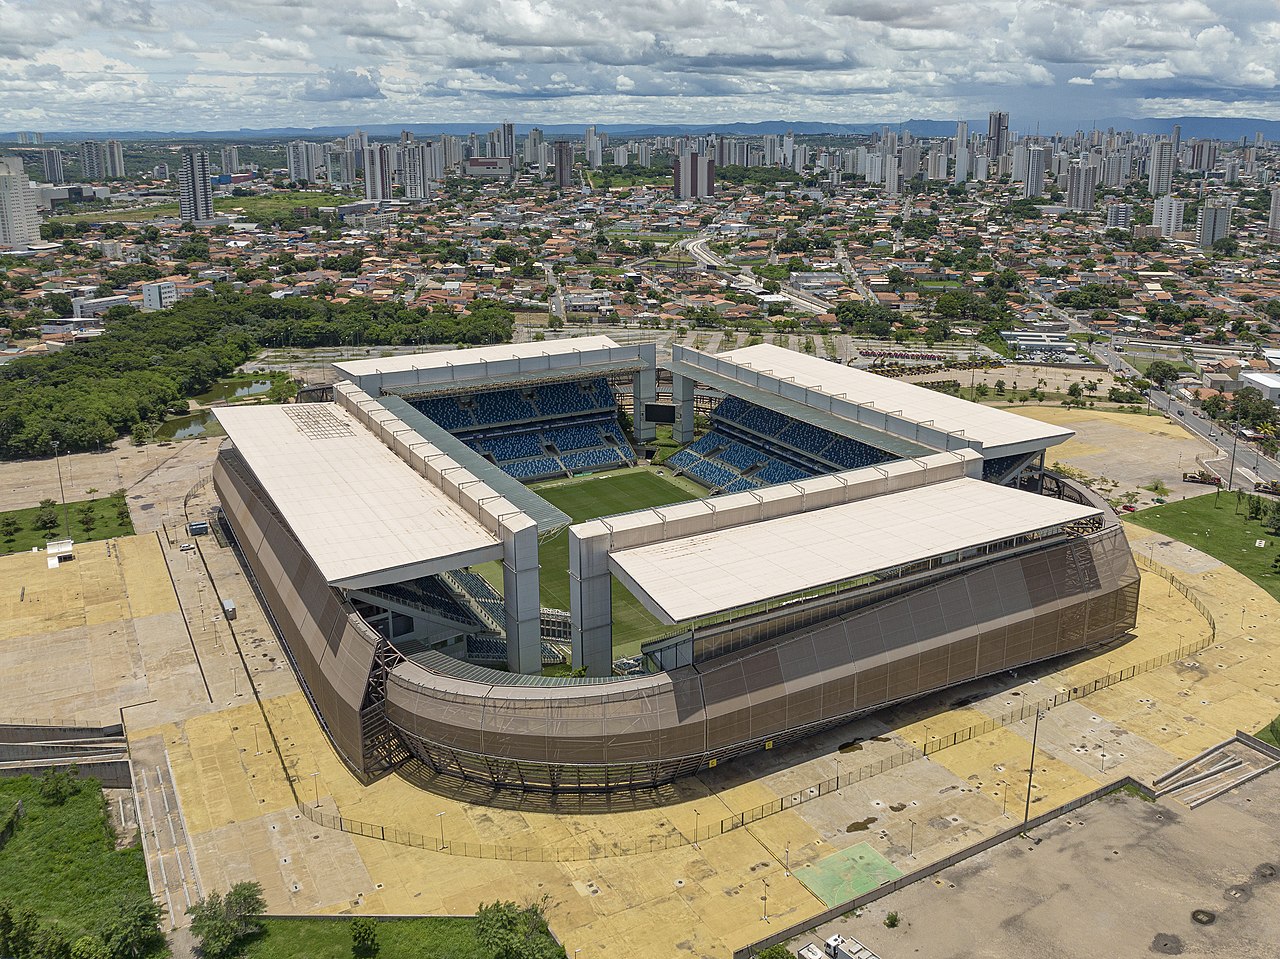 Clube de Regatas Vasco da Gama x Cruzeiro Esporte Clube 08/07/2023 – Odds  casas de apostas, Futebol